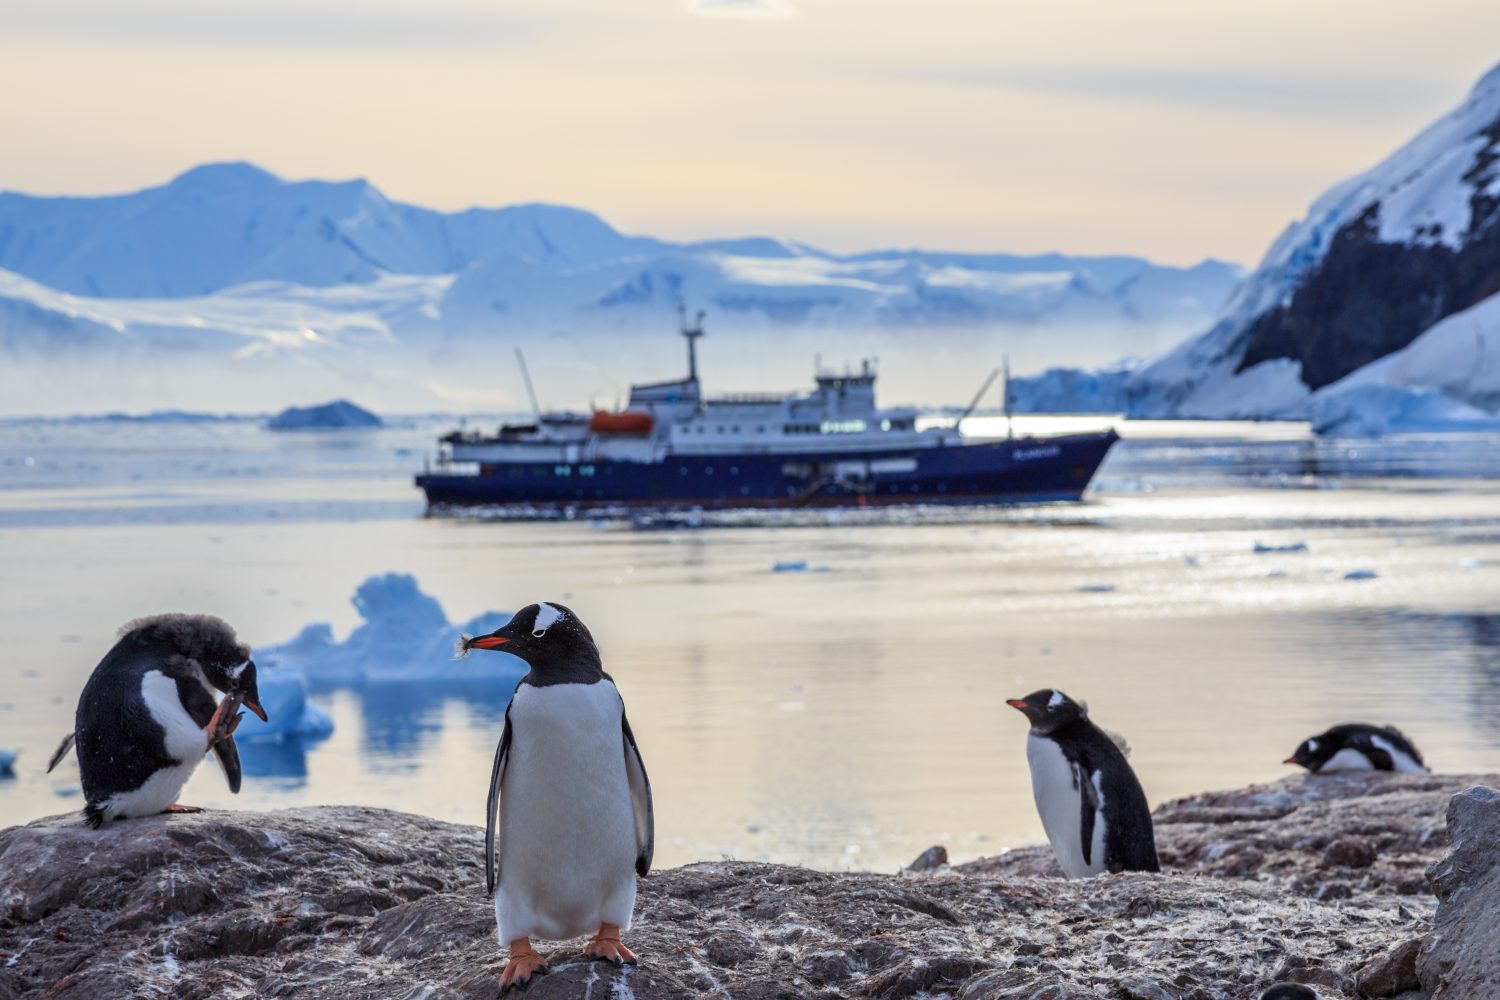 Pinguini Gentoo in piedi sulle rocce e nave da crociera sullo sfondo nella baia di Neco, Antartide